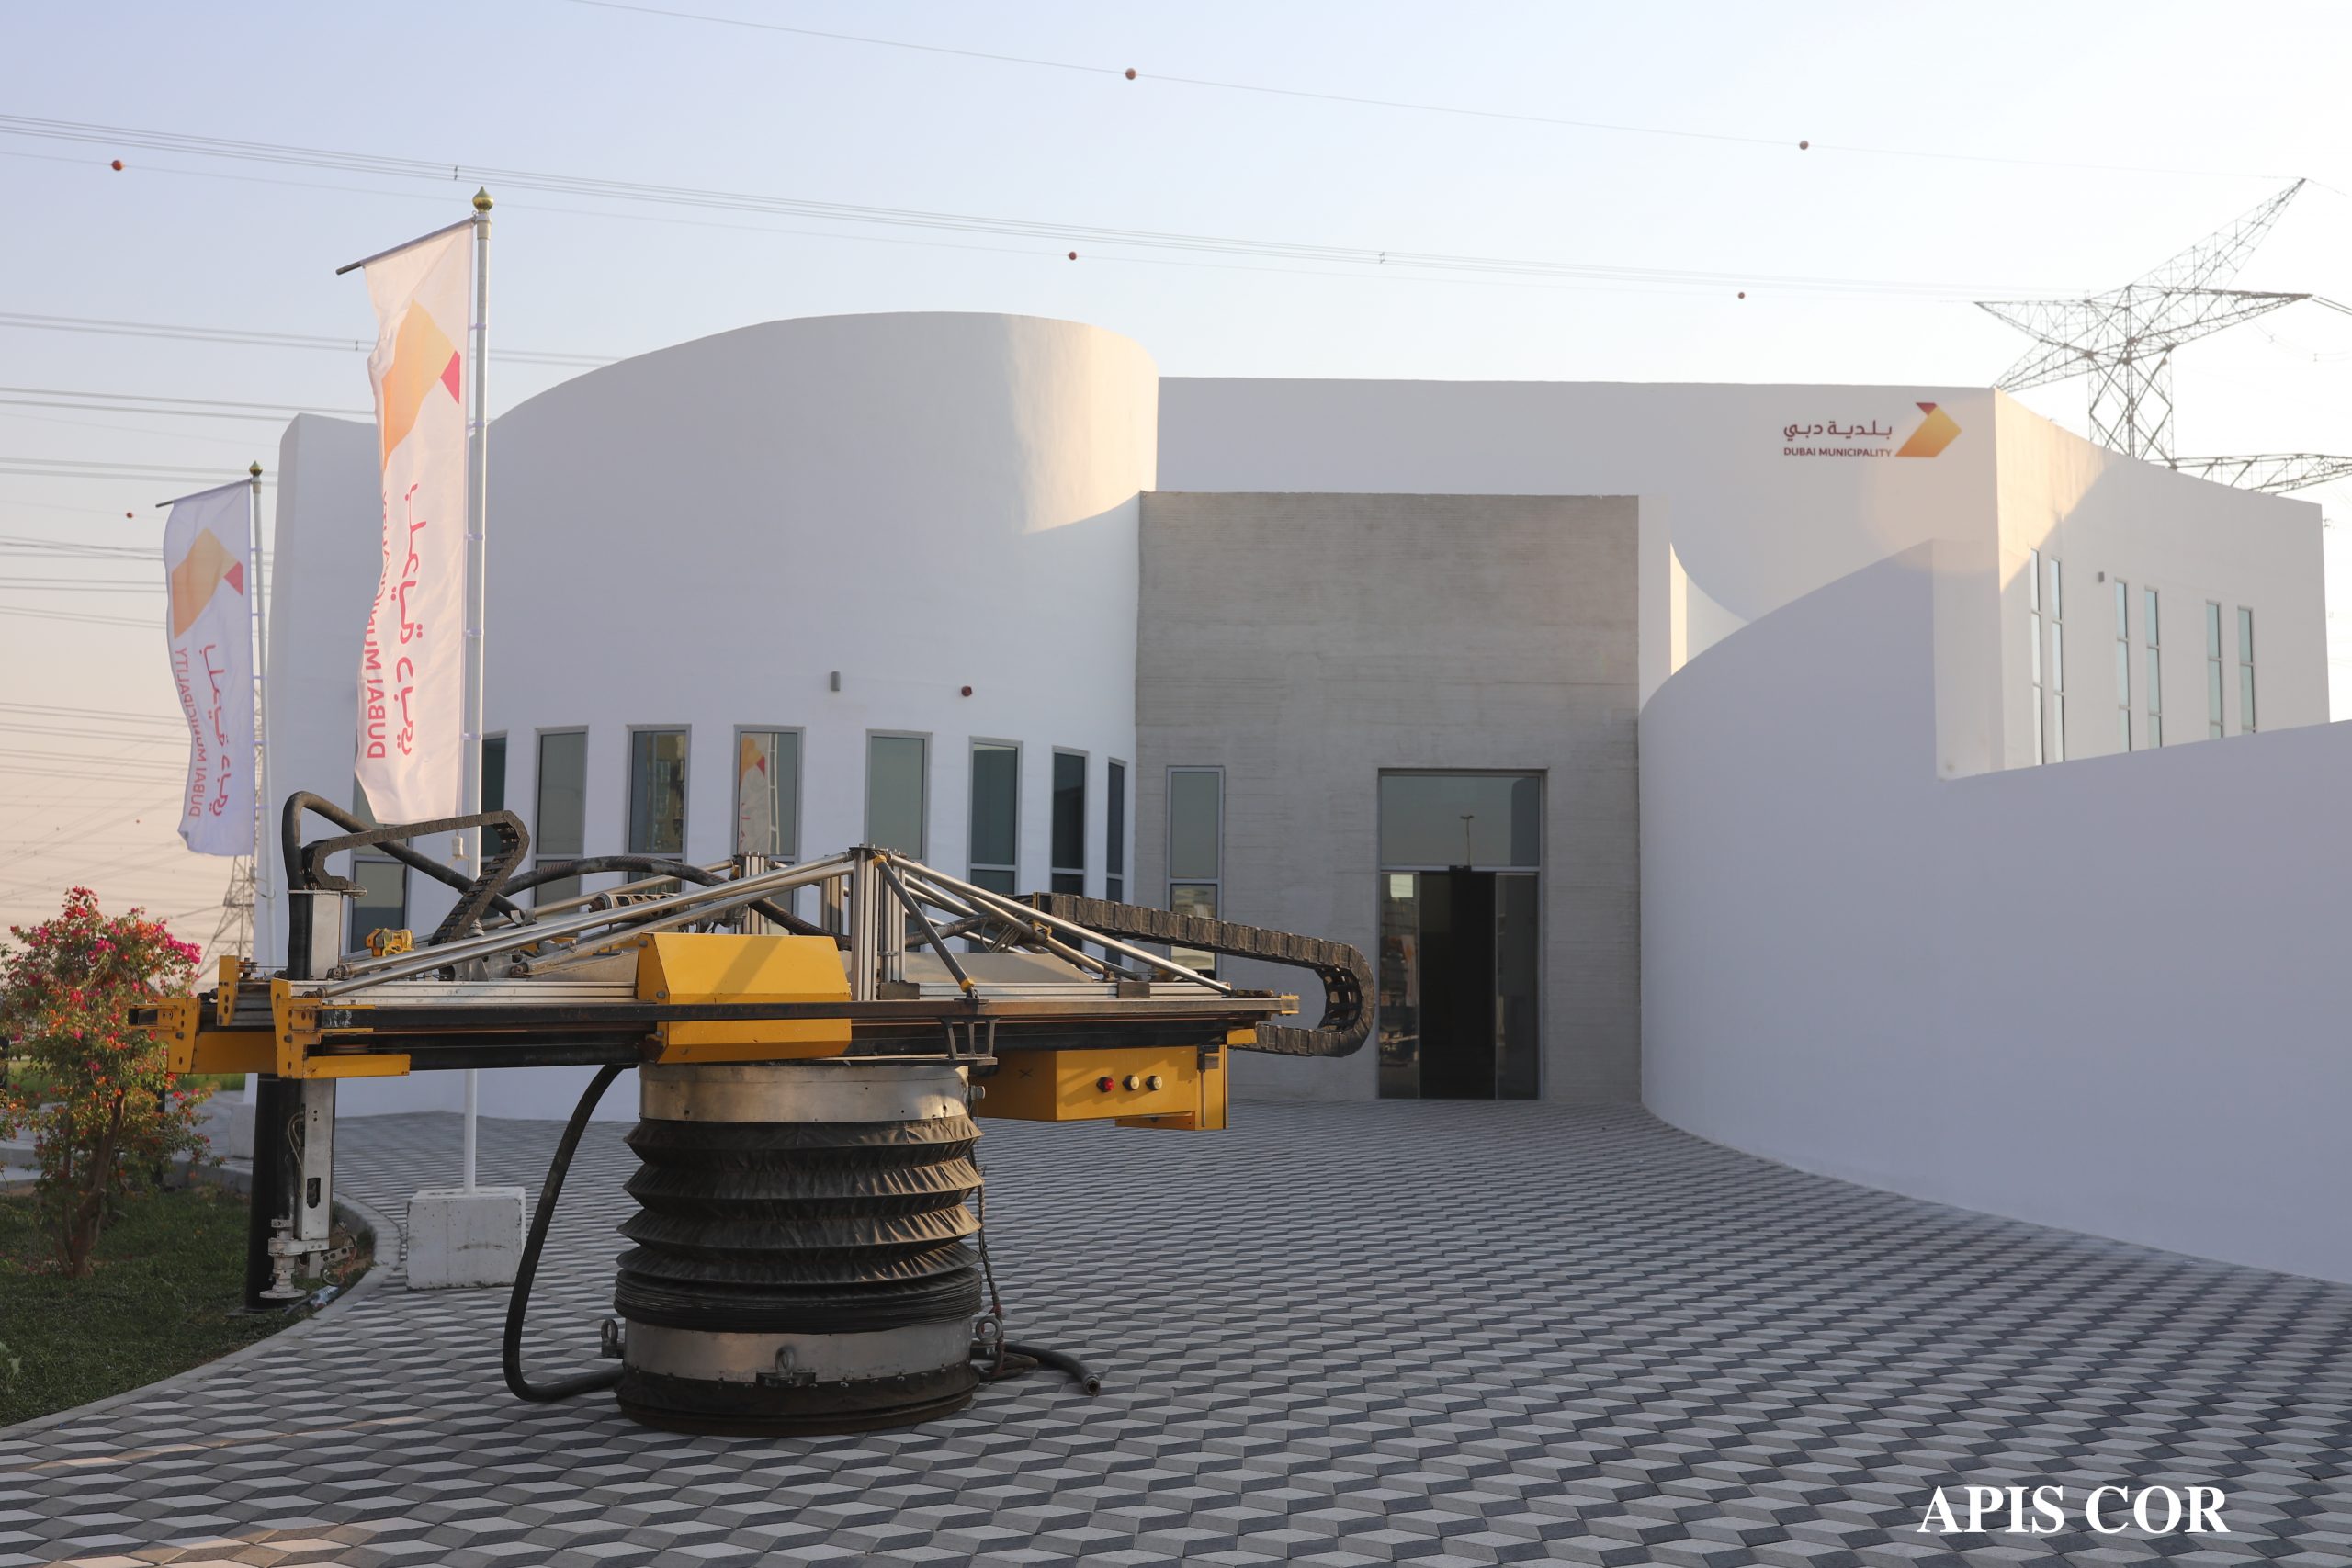 2-kondygnacyjny budynek z drukarki 3D stanął w Dubaju